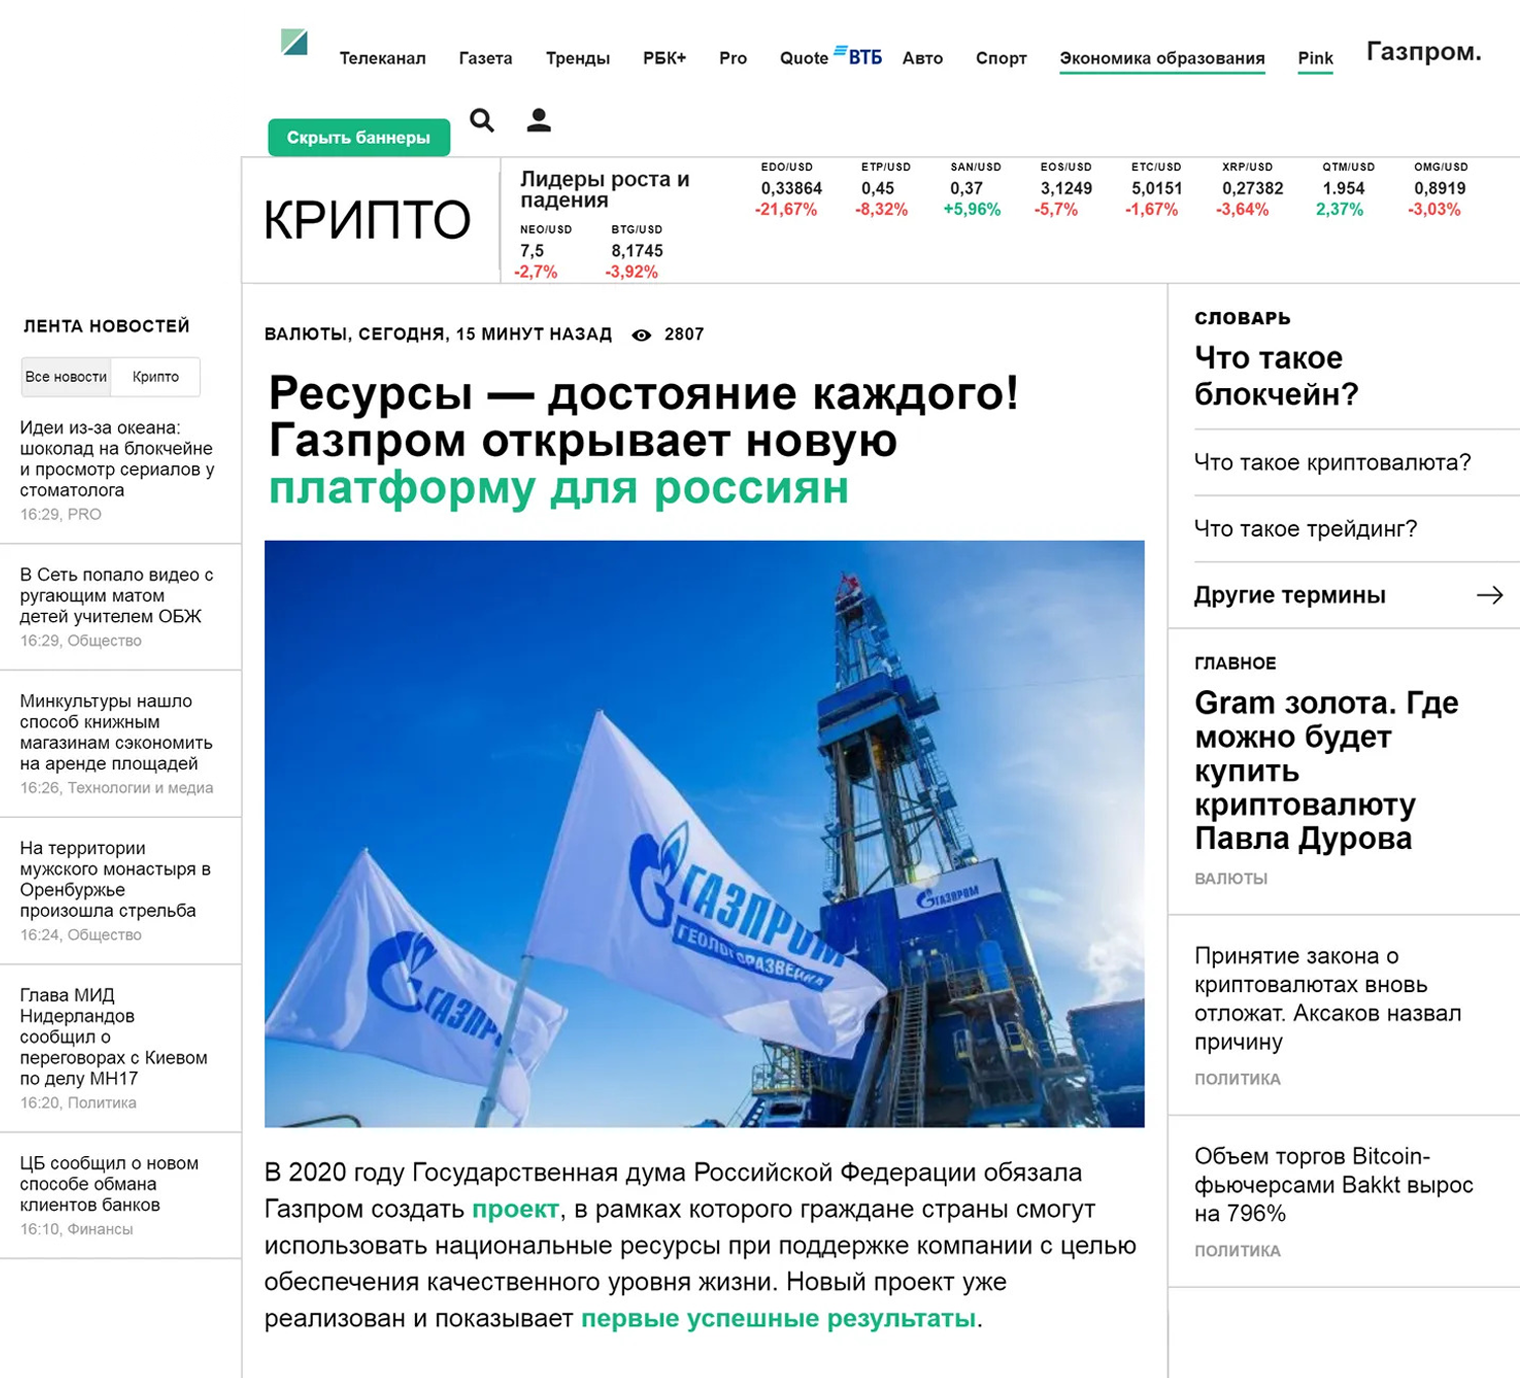 А вот, например, подделка новостного сайта РБК. Новость якобы про то, что «Газпром» раздает дивиденды всем желающим. Ссылки ведут на мошеннический проект, который предлагает «заплатить налог» и тут же получить причитающиеся деньги